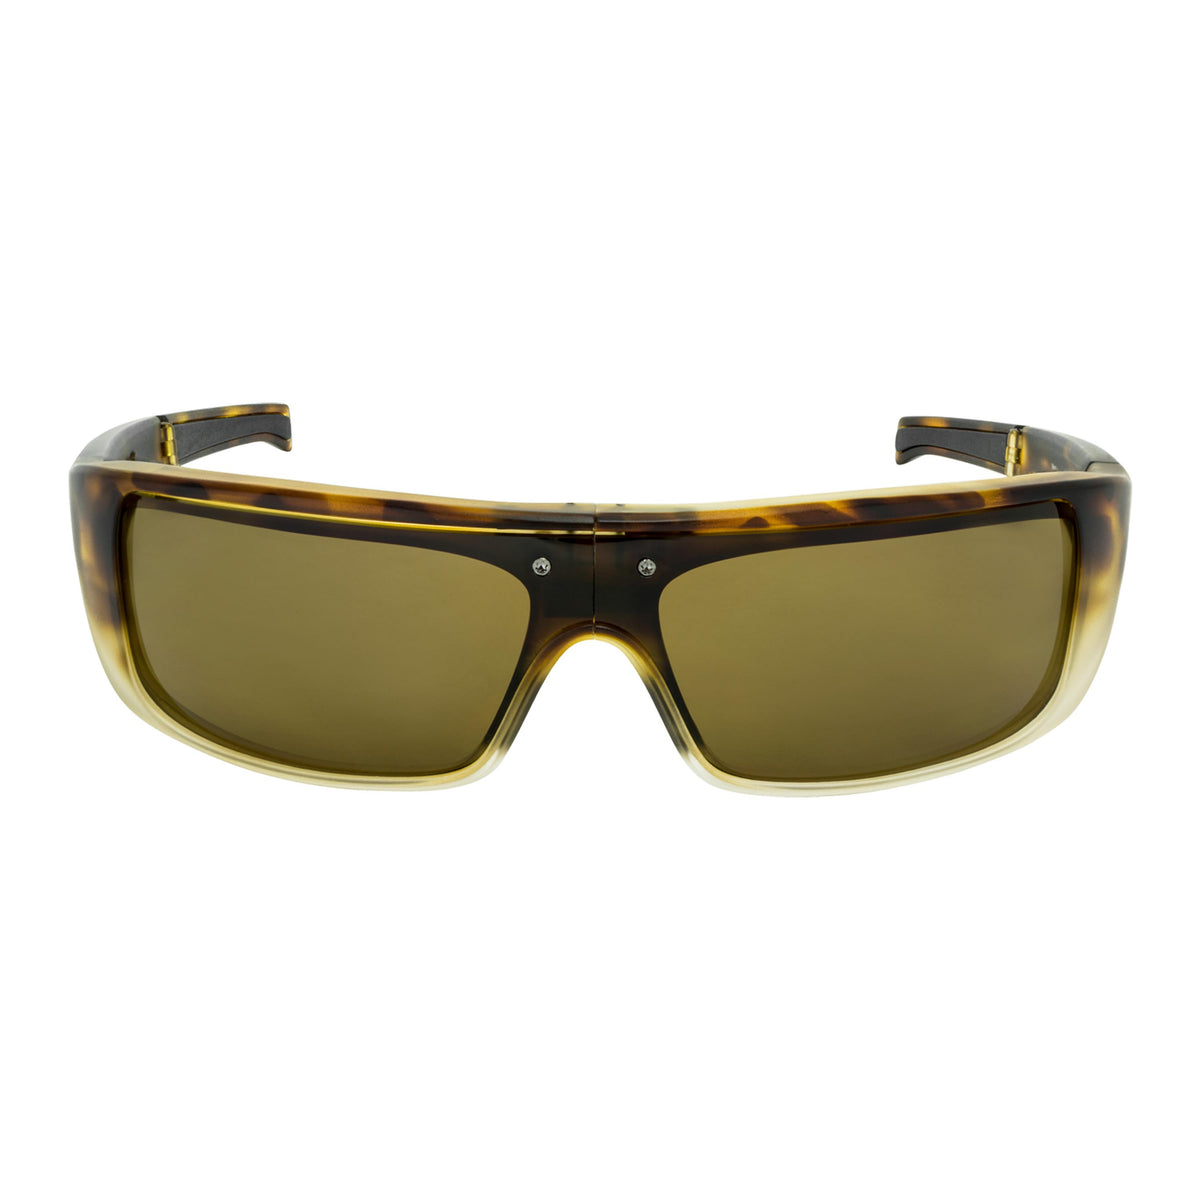 Popticals, Premium Compact Sunglasses, PopGear, 010050-BUNP, Polarized Sunglasses, Matte Tortoise Crystal Frames, Brown Lenses, Front View